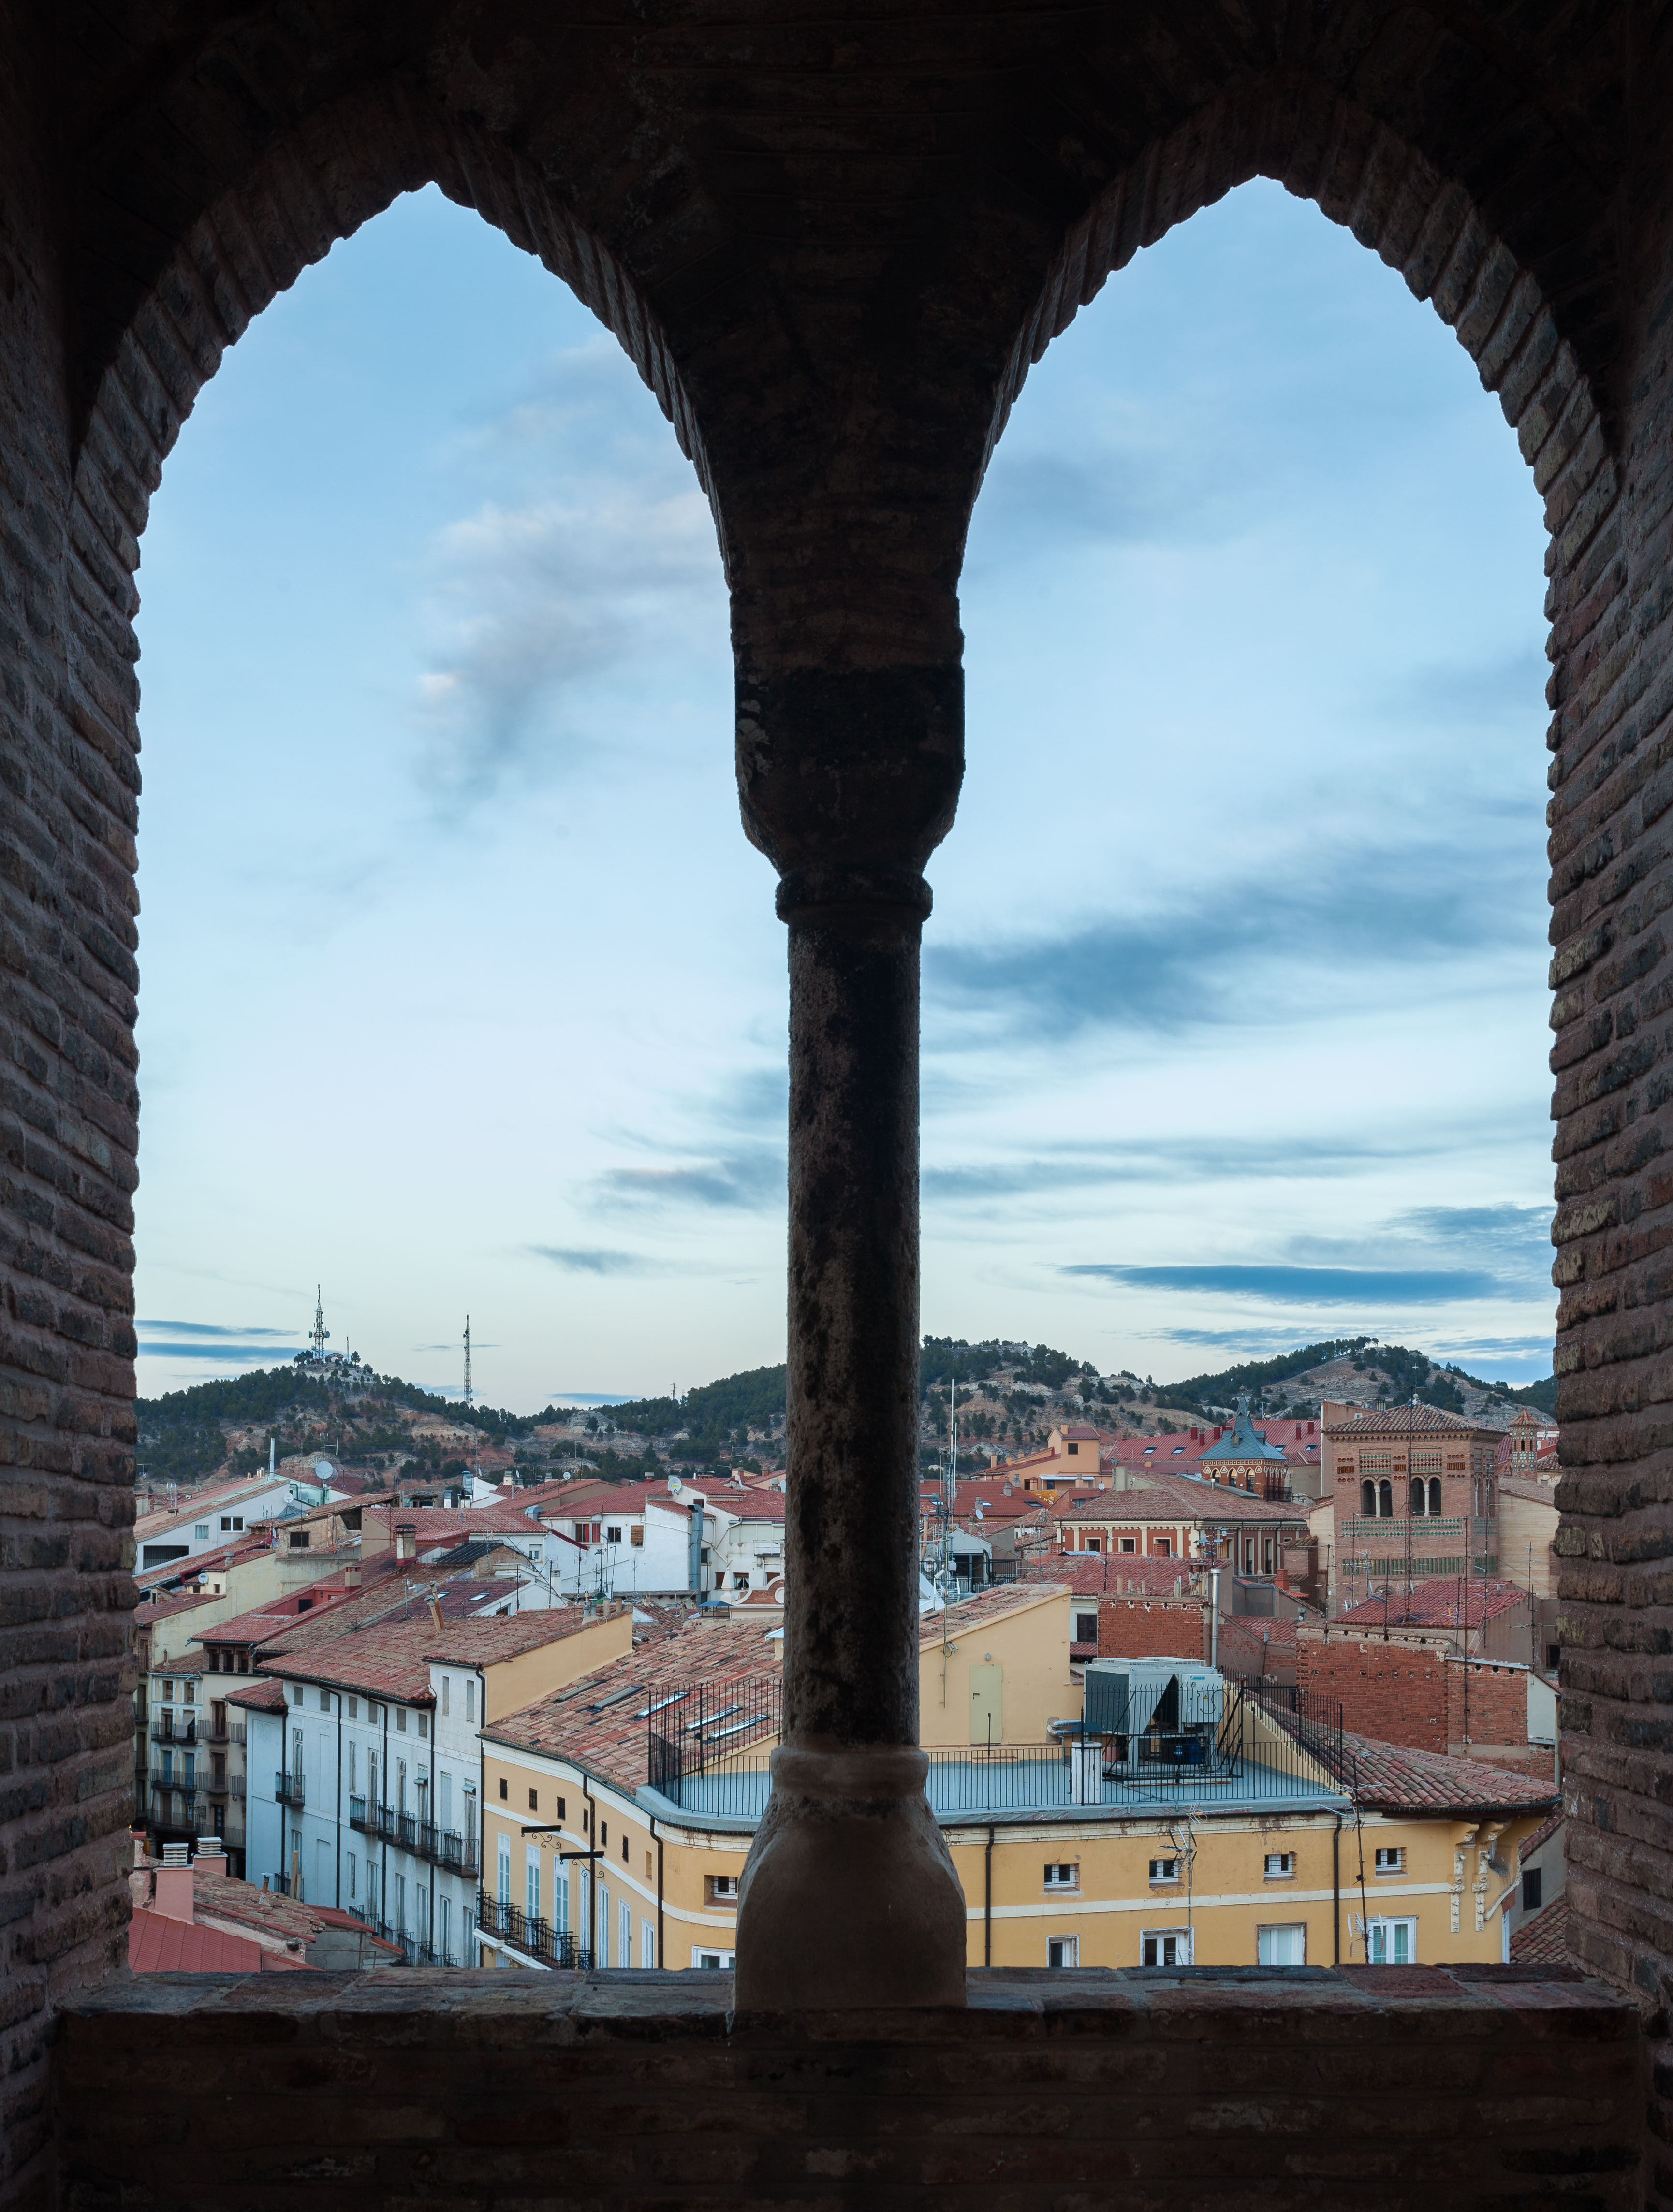 Vista de Teruel desde la torre de la iglesia del Salvador, España, 2014-01-10, DD 81